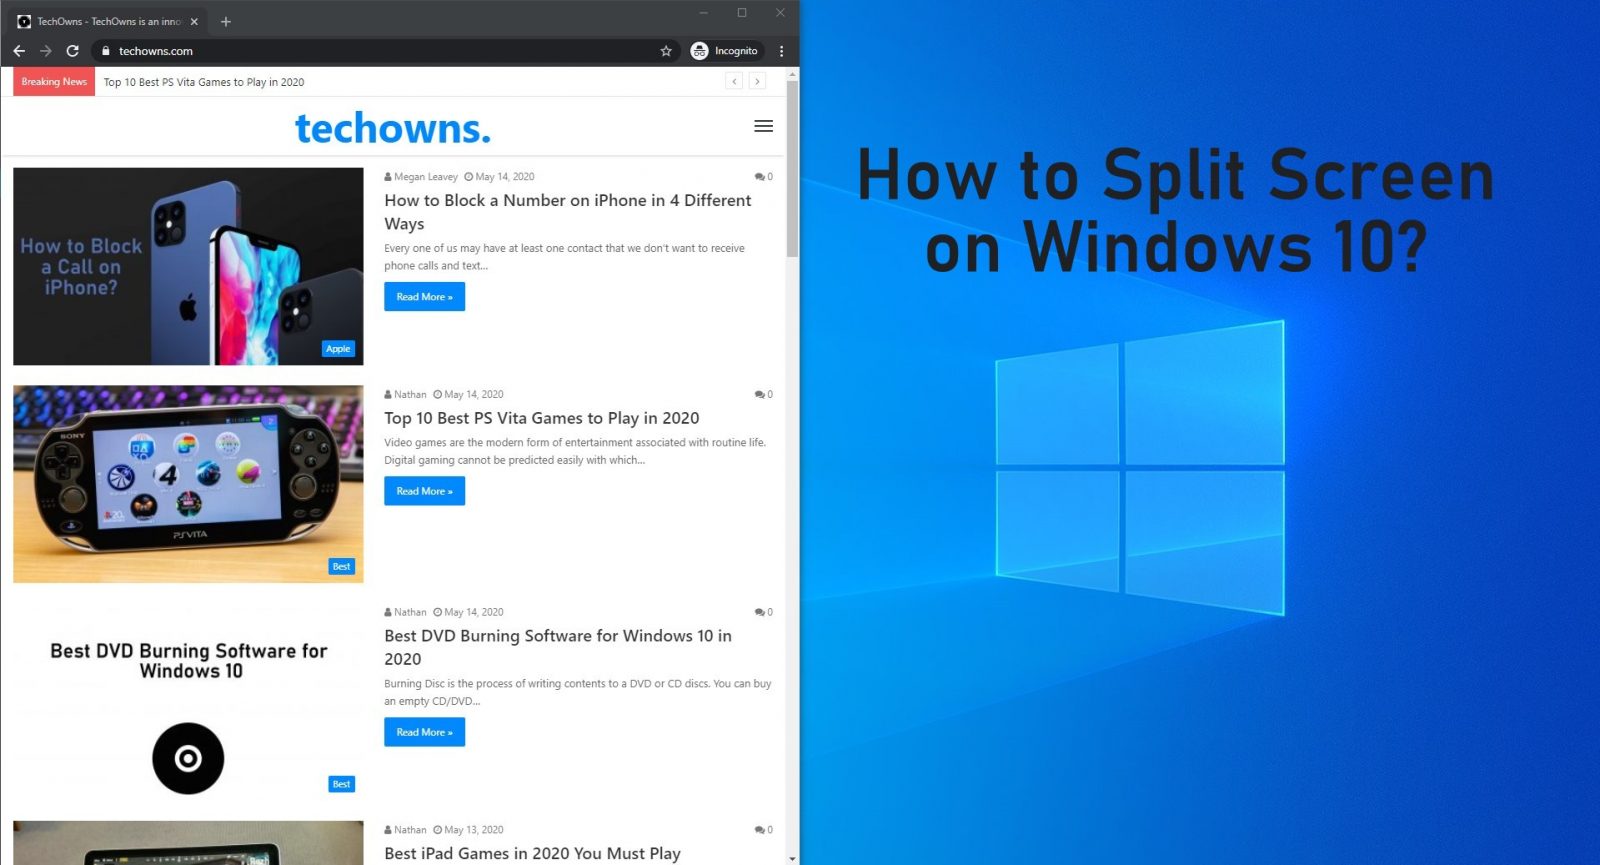 كيفية تقسيم الشاشة Windows 10 باستخدام طريقتين بسيطتين